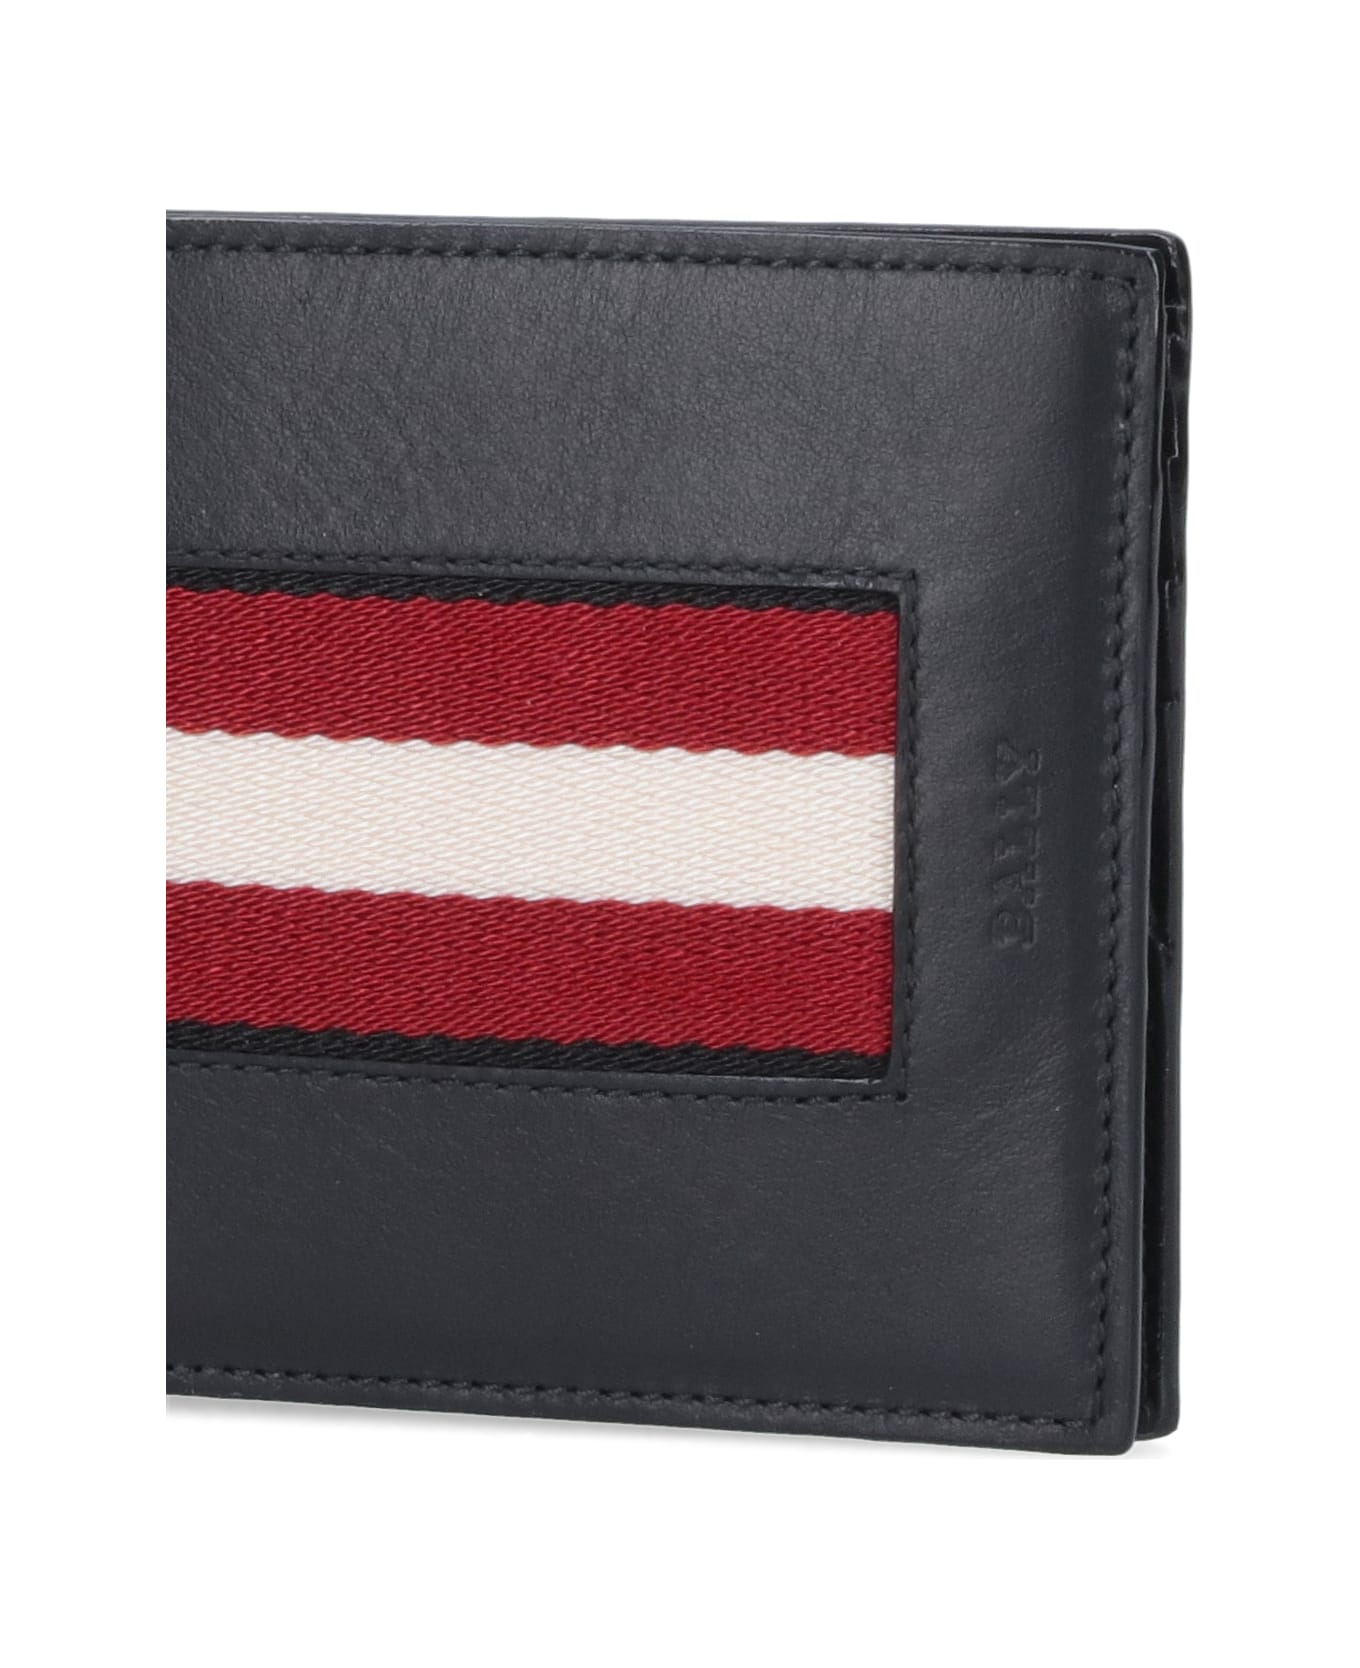 Bally Bi-fold Wallet "brasai" - Black   財布